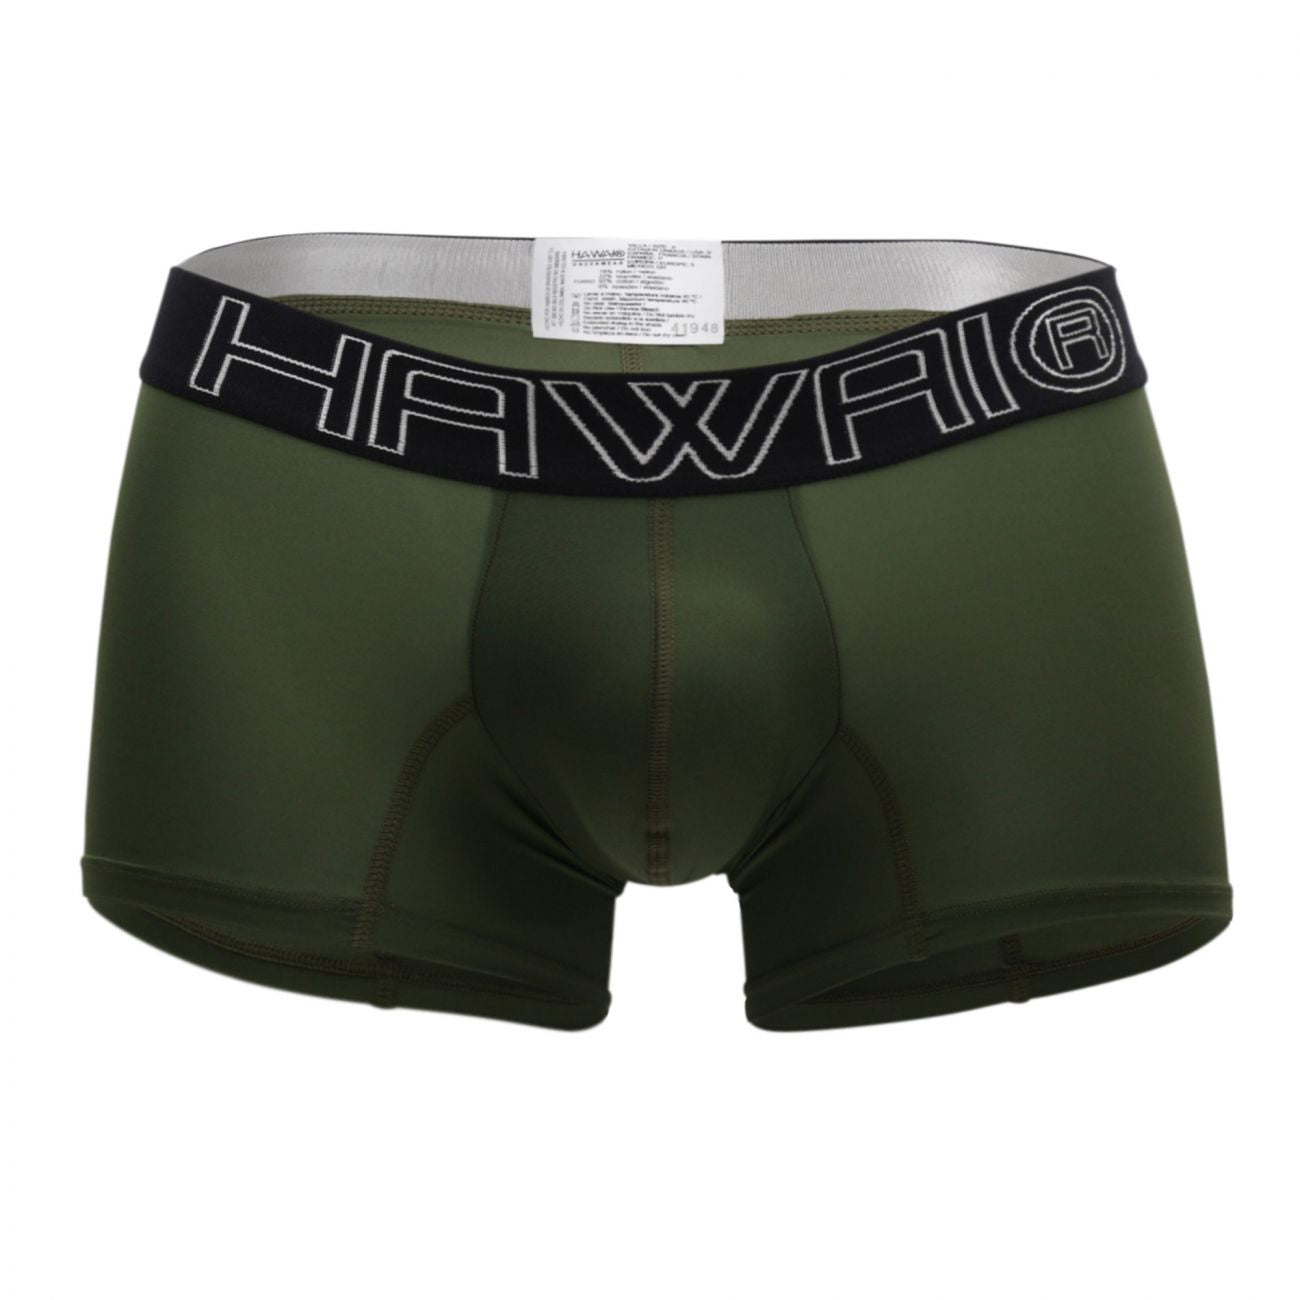 HAWAI 41948 Boxer Briefs Military Green